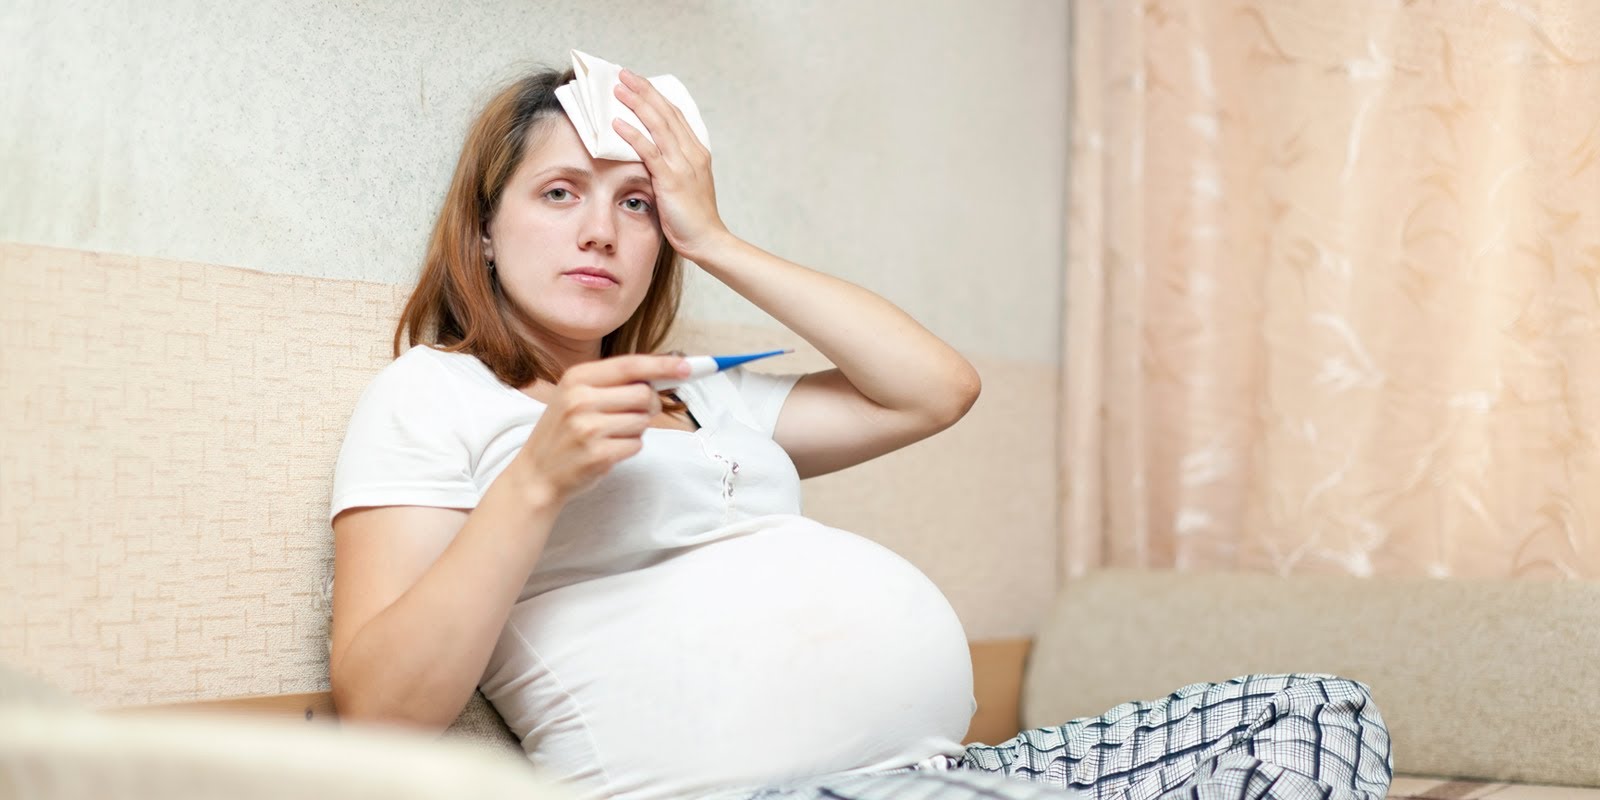 Скачки температуры тела у беременной: стоит ли бояться и как бороться